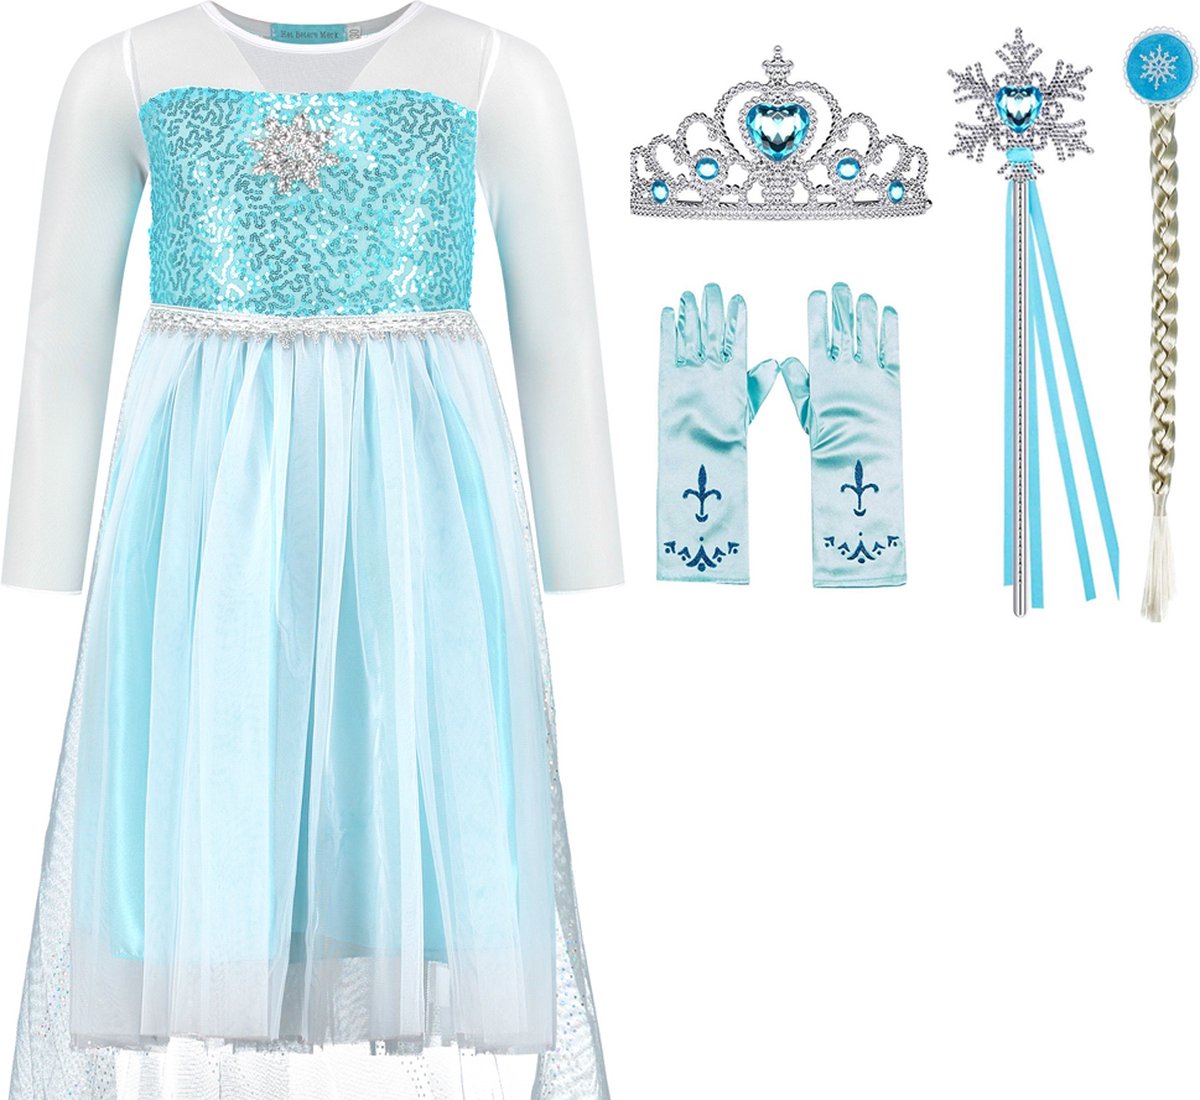 Verkleedkleren meisje - Frozen - Elsa jurk - blauwe prinsessenjurk- maat 128/134 (140) - prinsessen verkleedkleding - kroon - toverstaf - Elsa vlecht - handschoenen